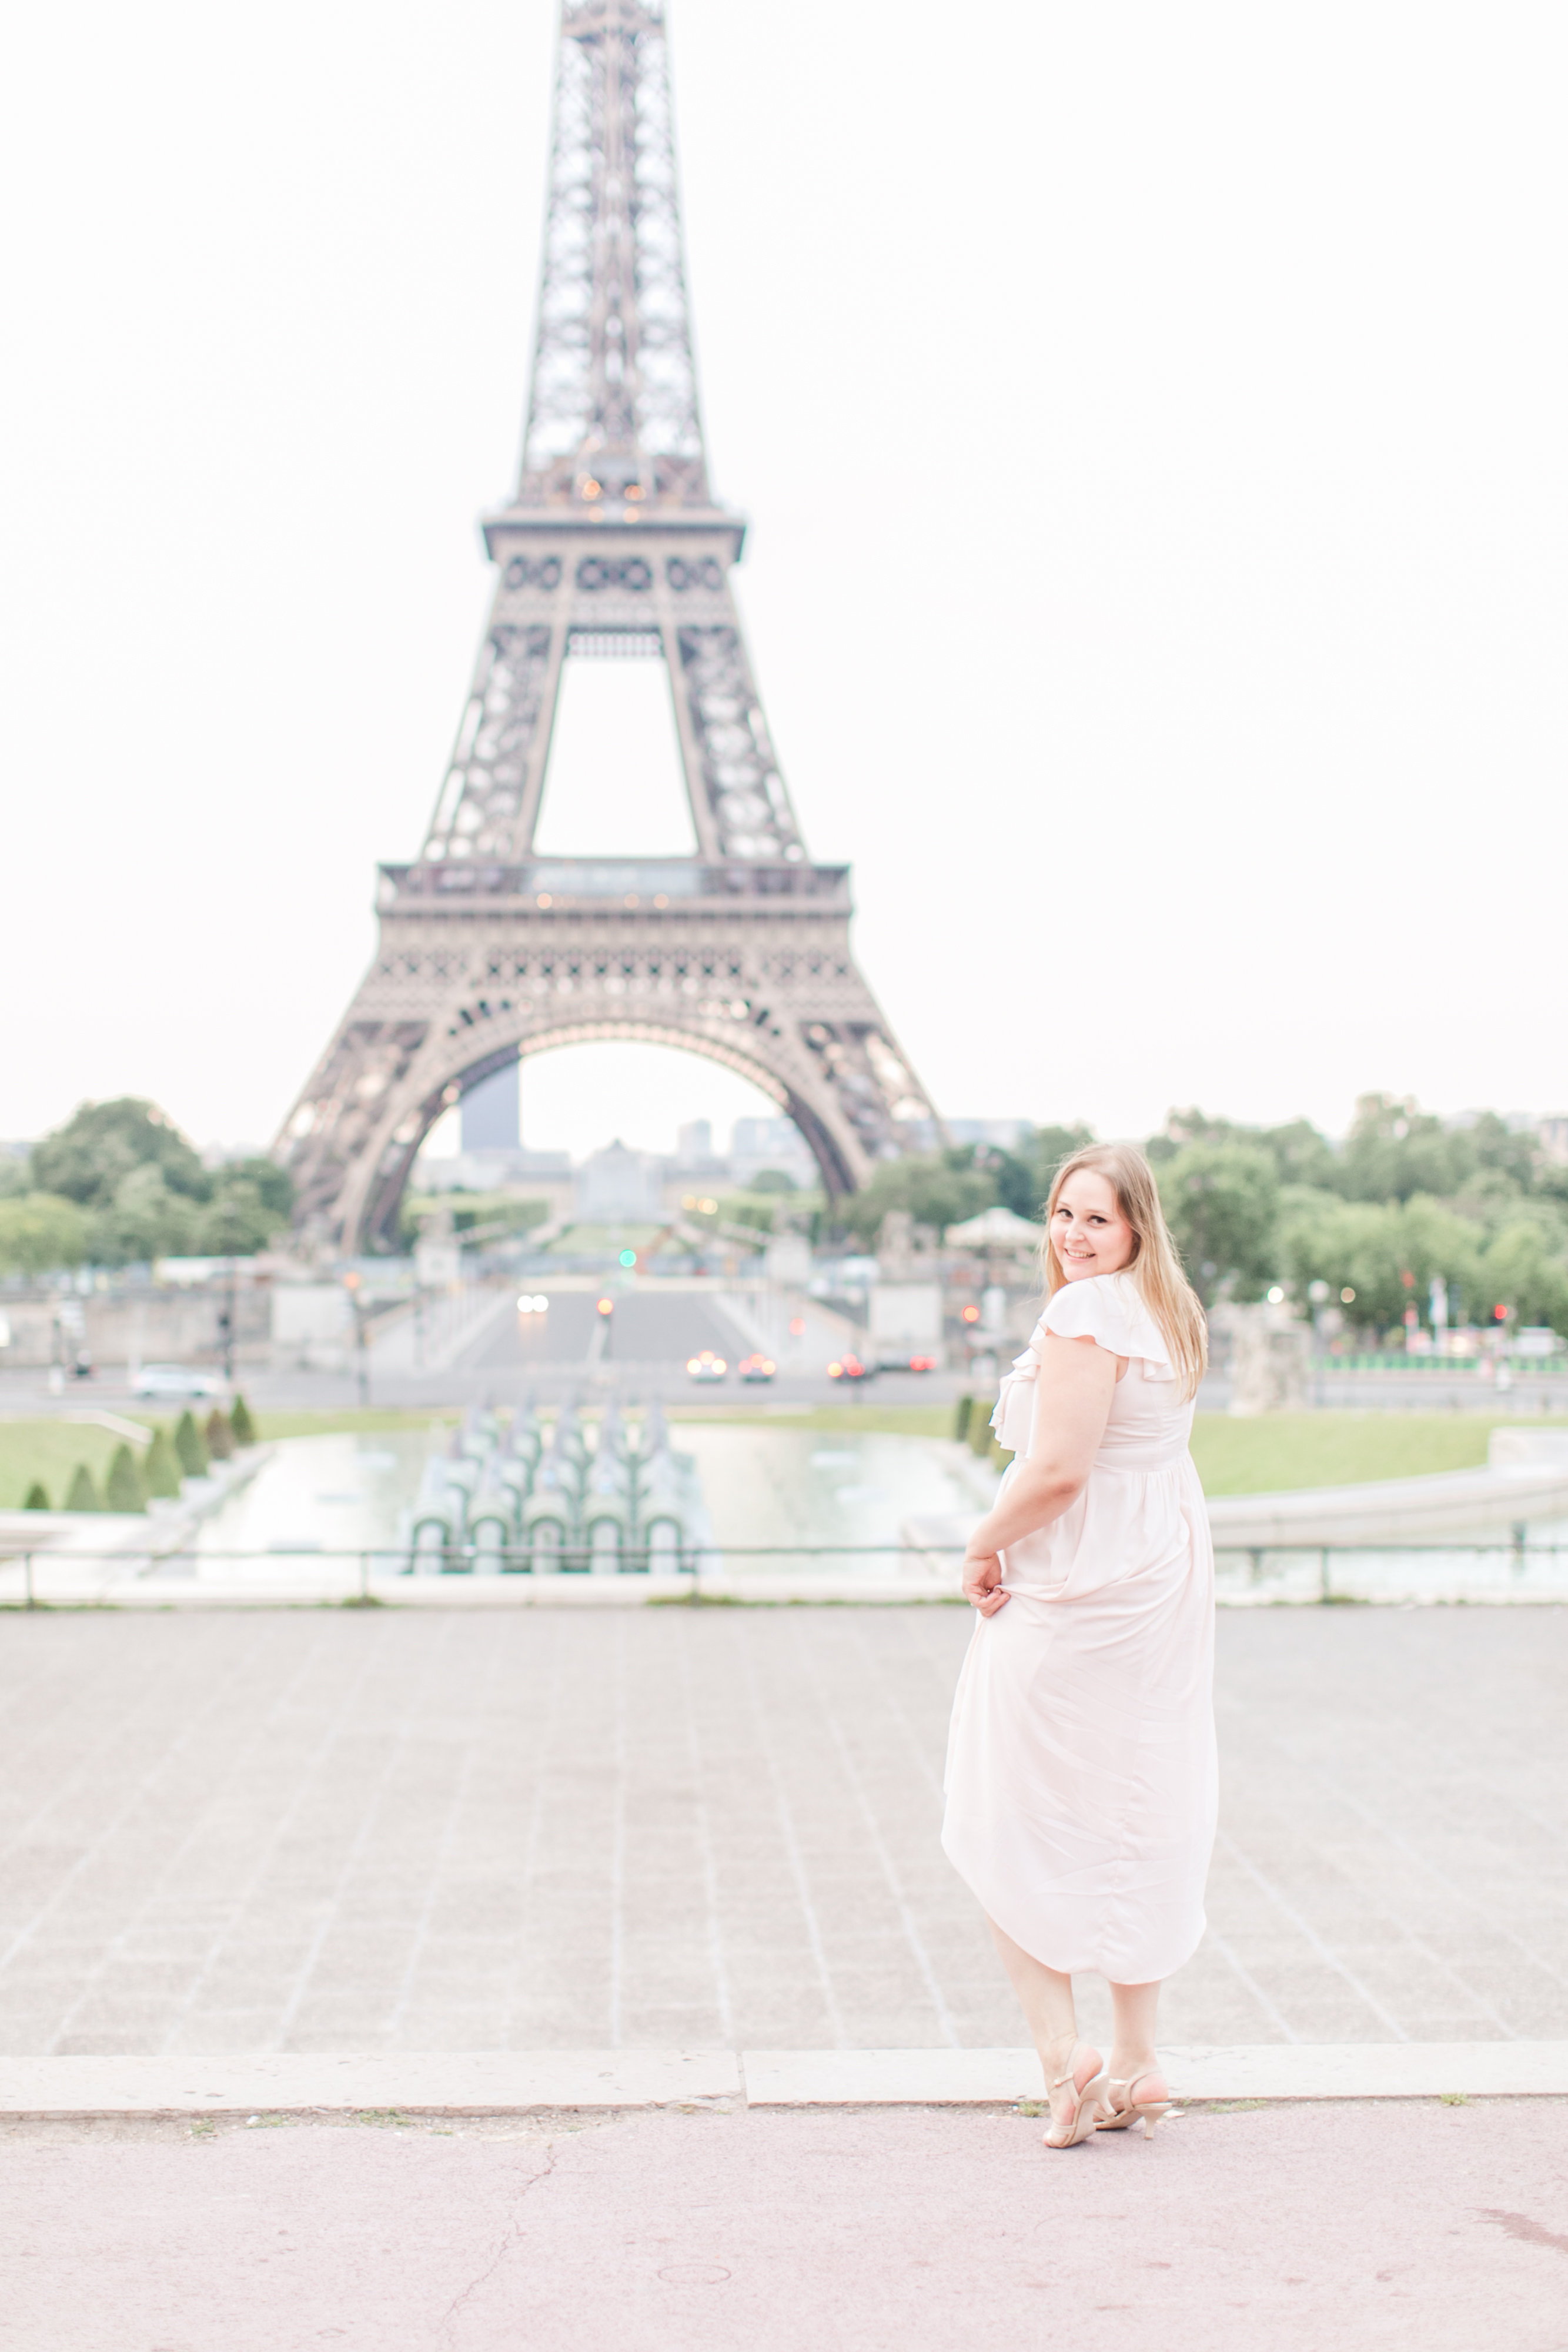 Una francesa hace realidad su sueño: convertirse en fotógrafa